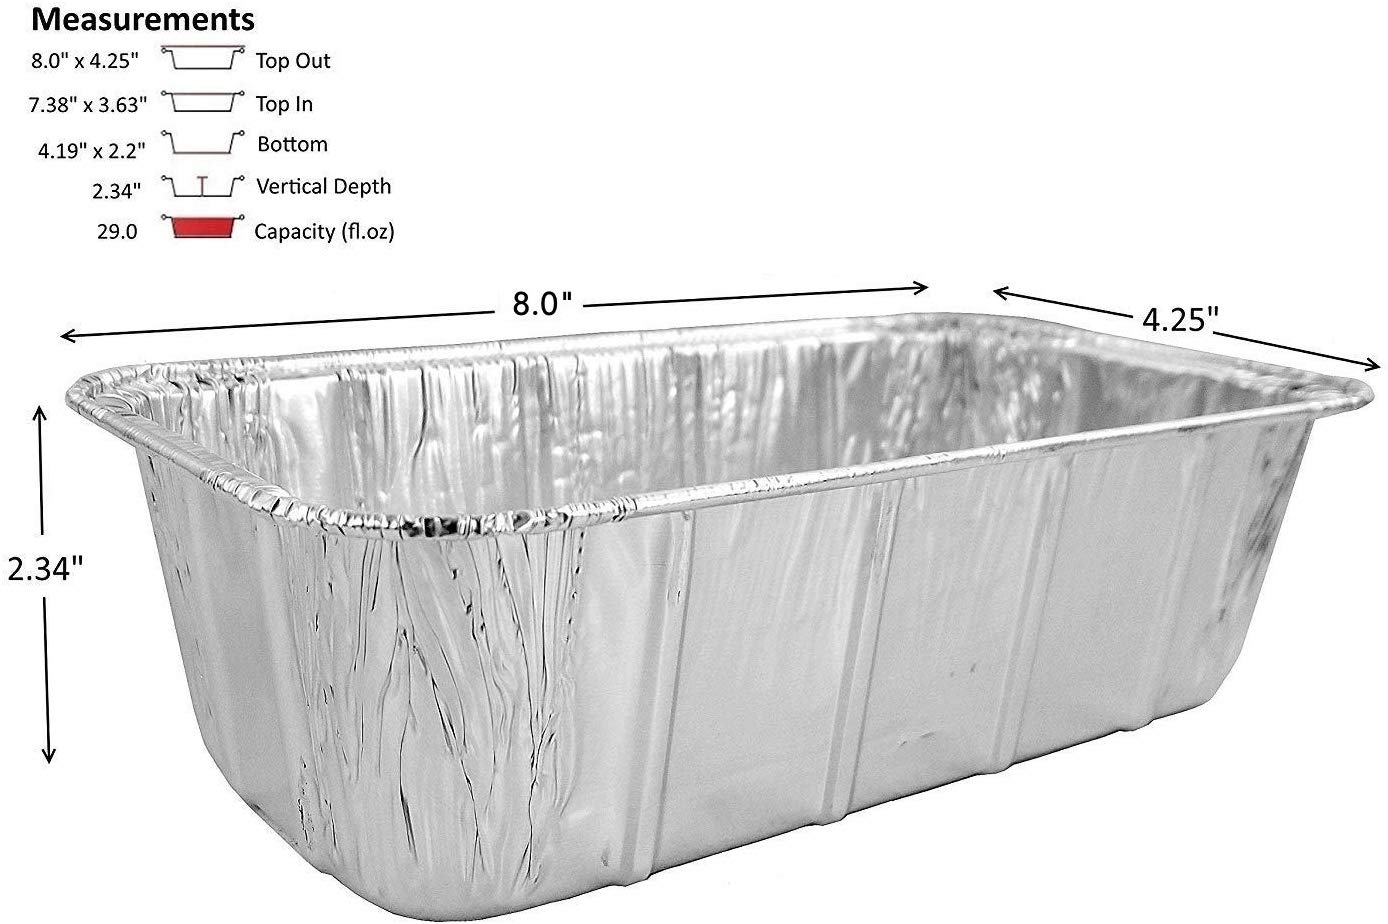 D&W Fine Pack 15640, 1.5 lb Aluminum Foil Loaf Pan (500/Case)